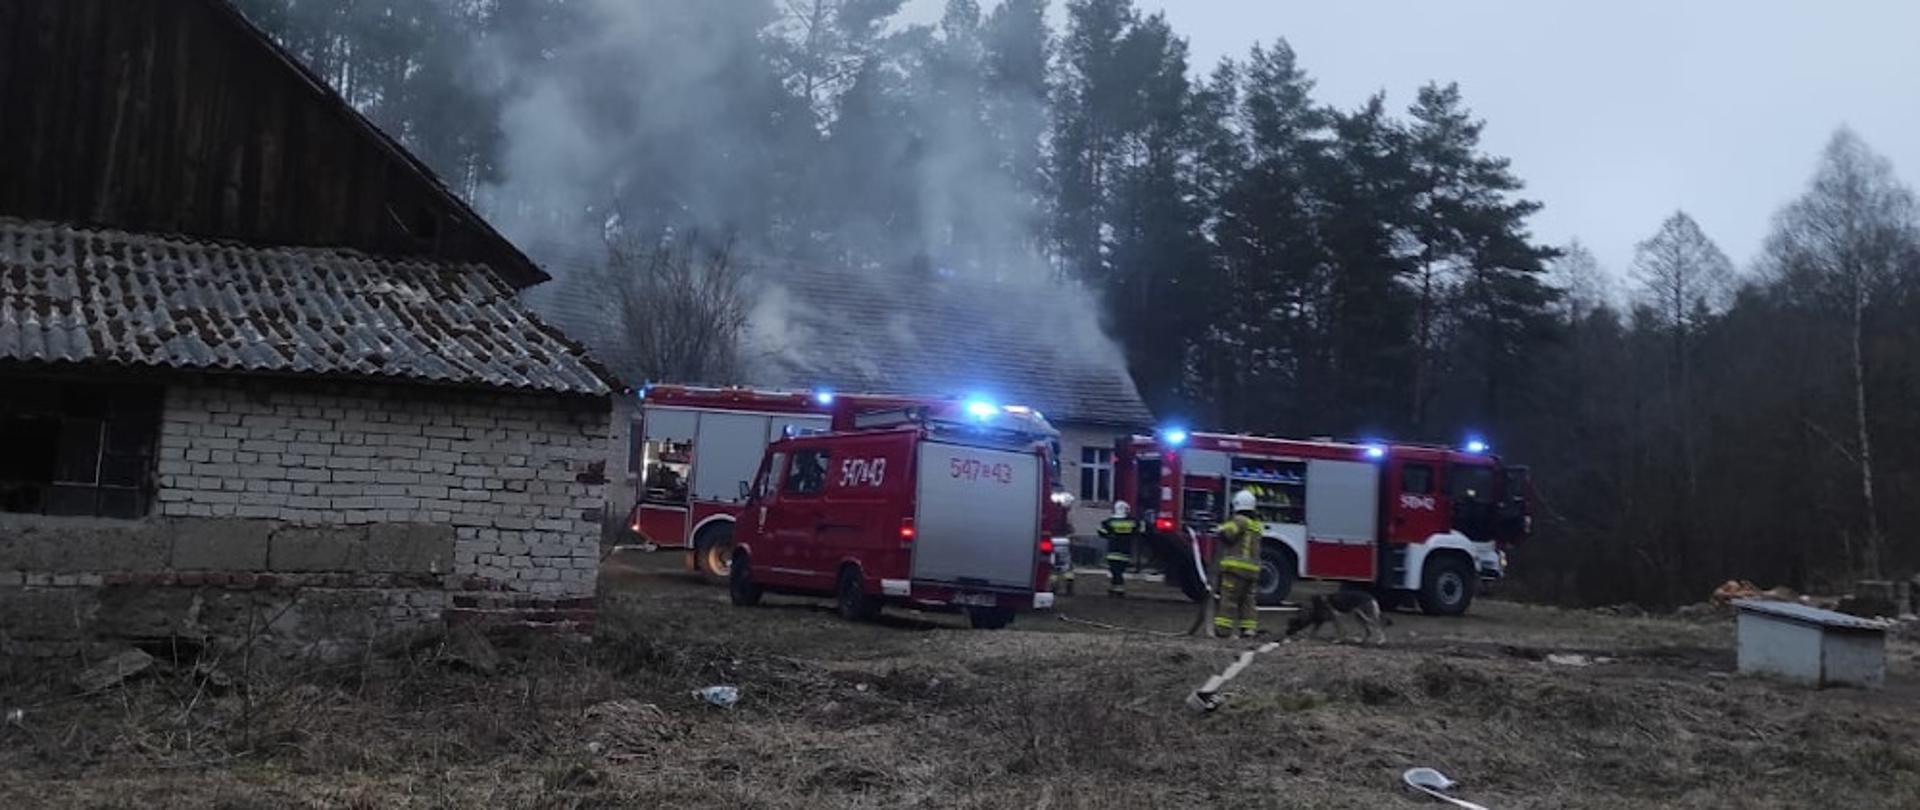 Pożar budynku mieszkalnego w miejscowości Iwin - trzy samochody ratowniczo-gaśnicze, koloru czerwone na tle palącego się budynku